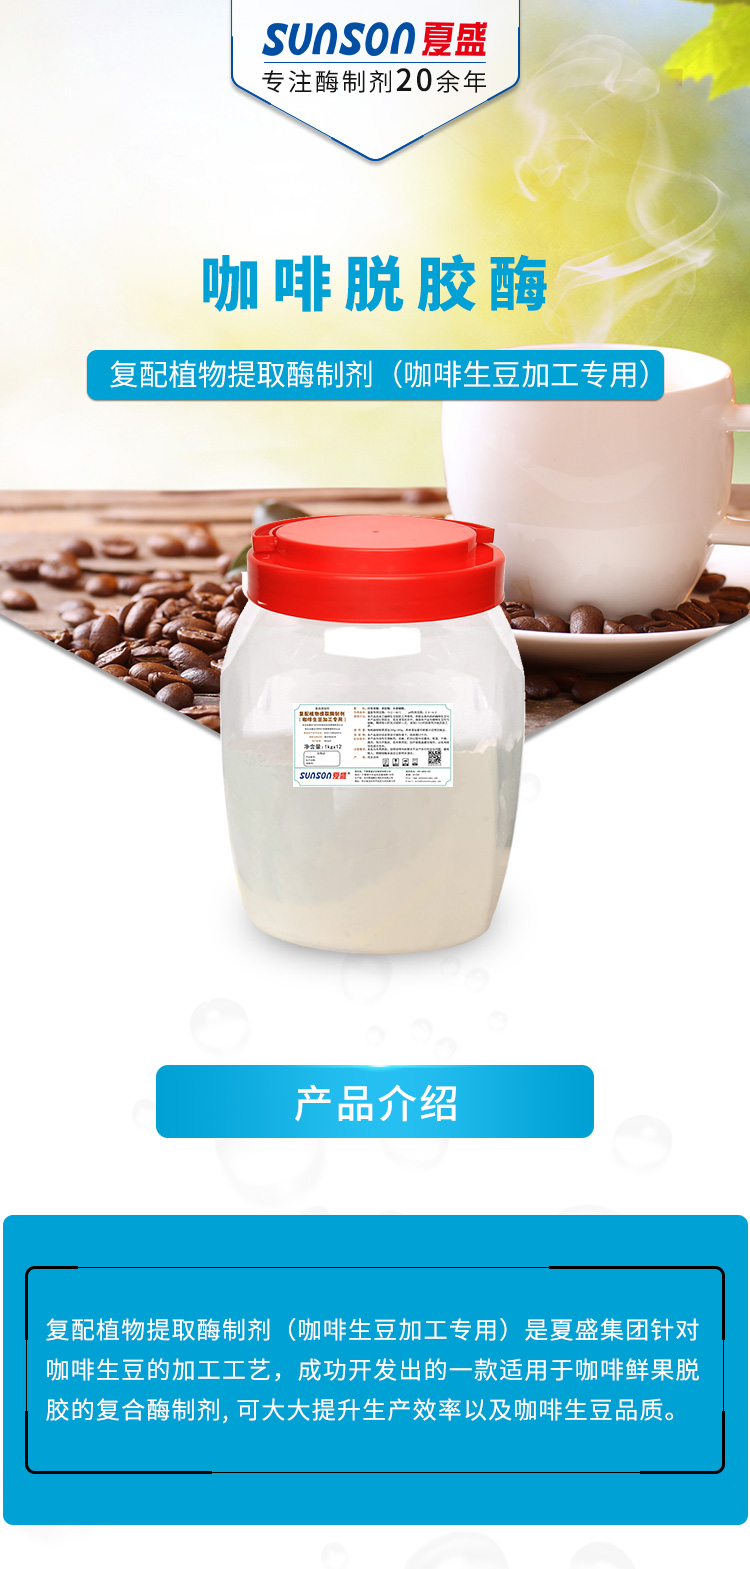 复配植物提取酶制剂（咖啡生豆加工专用）_01